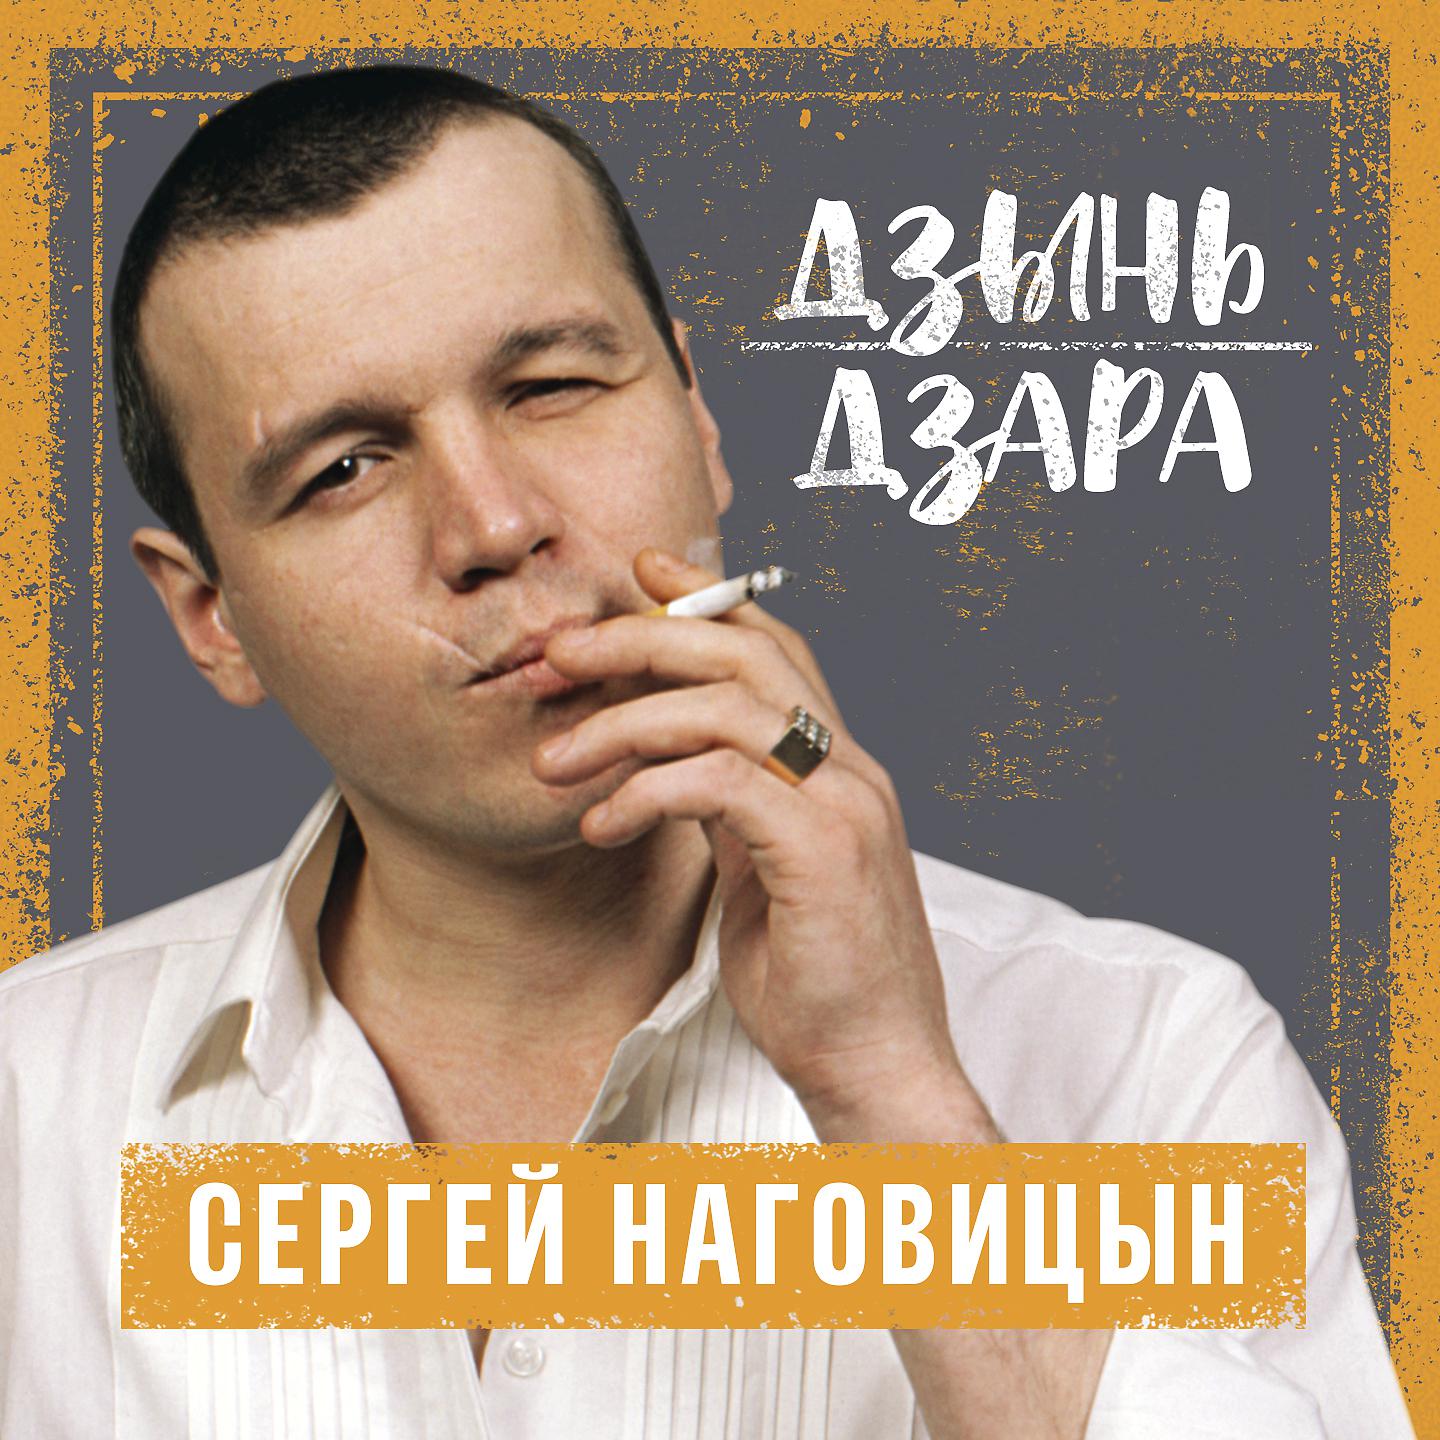 Сборник лучших песен наговицына. Серега Наговицын.